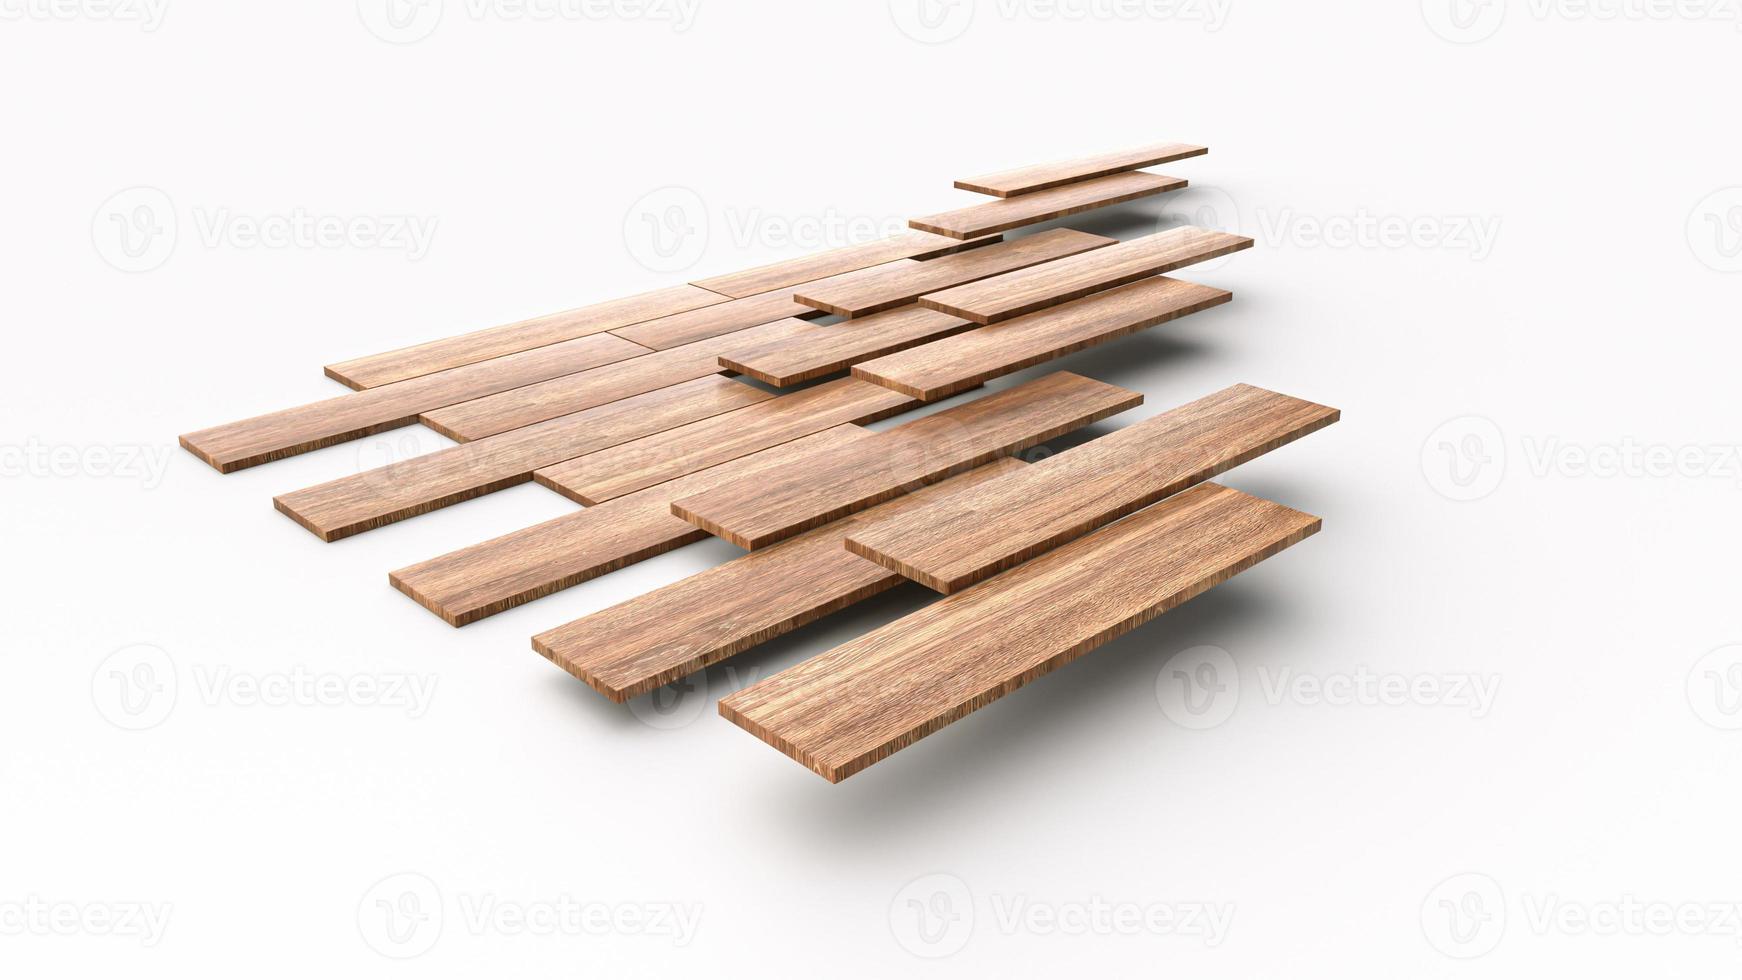 trägolv installation fixering av parketter på golv. 3D-illustration om konstruktion foto